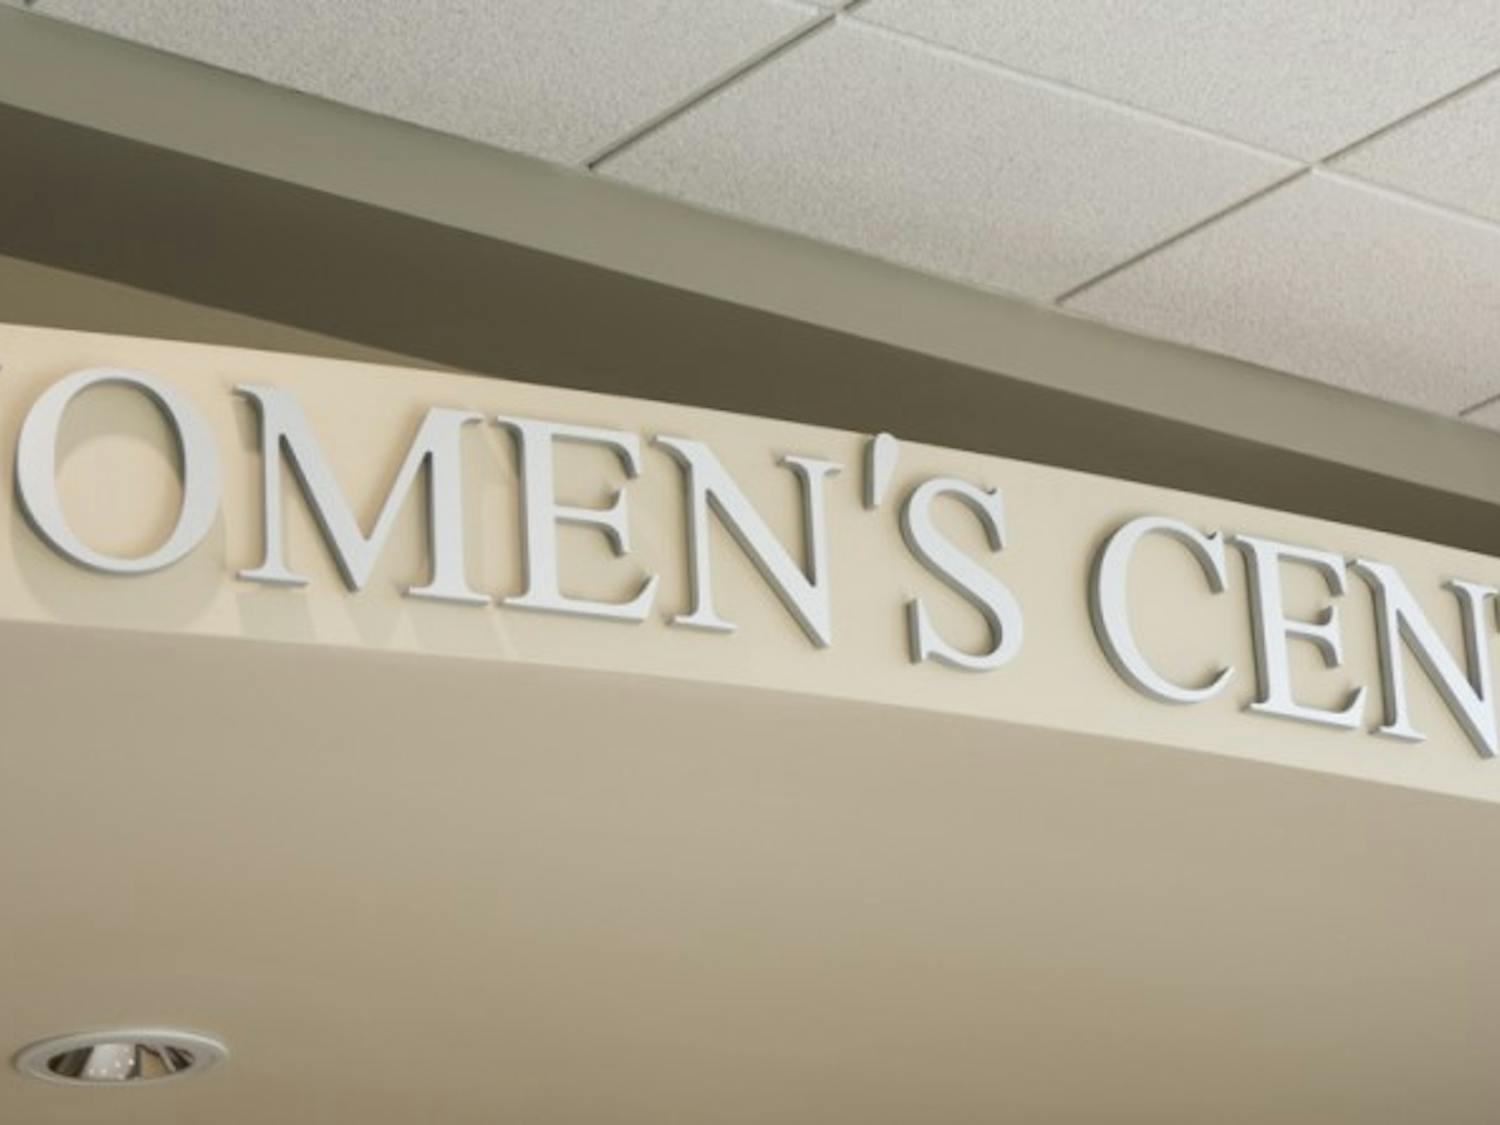 Womens Center